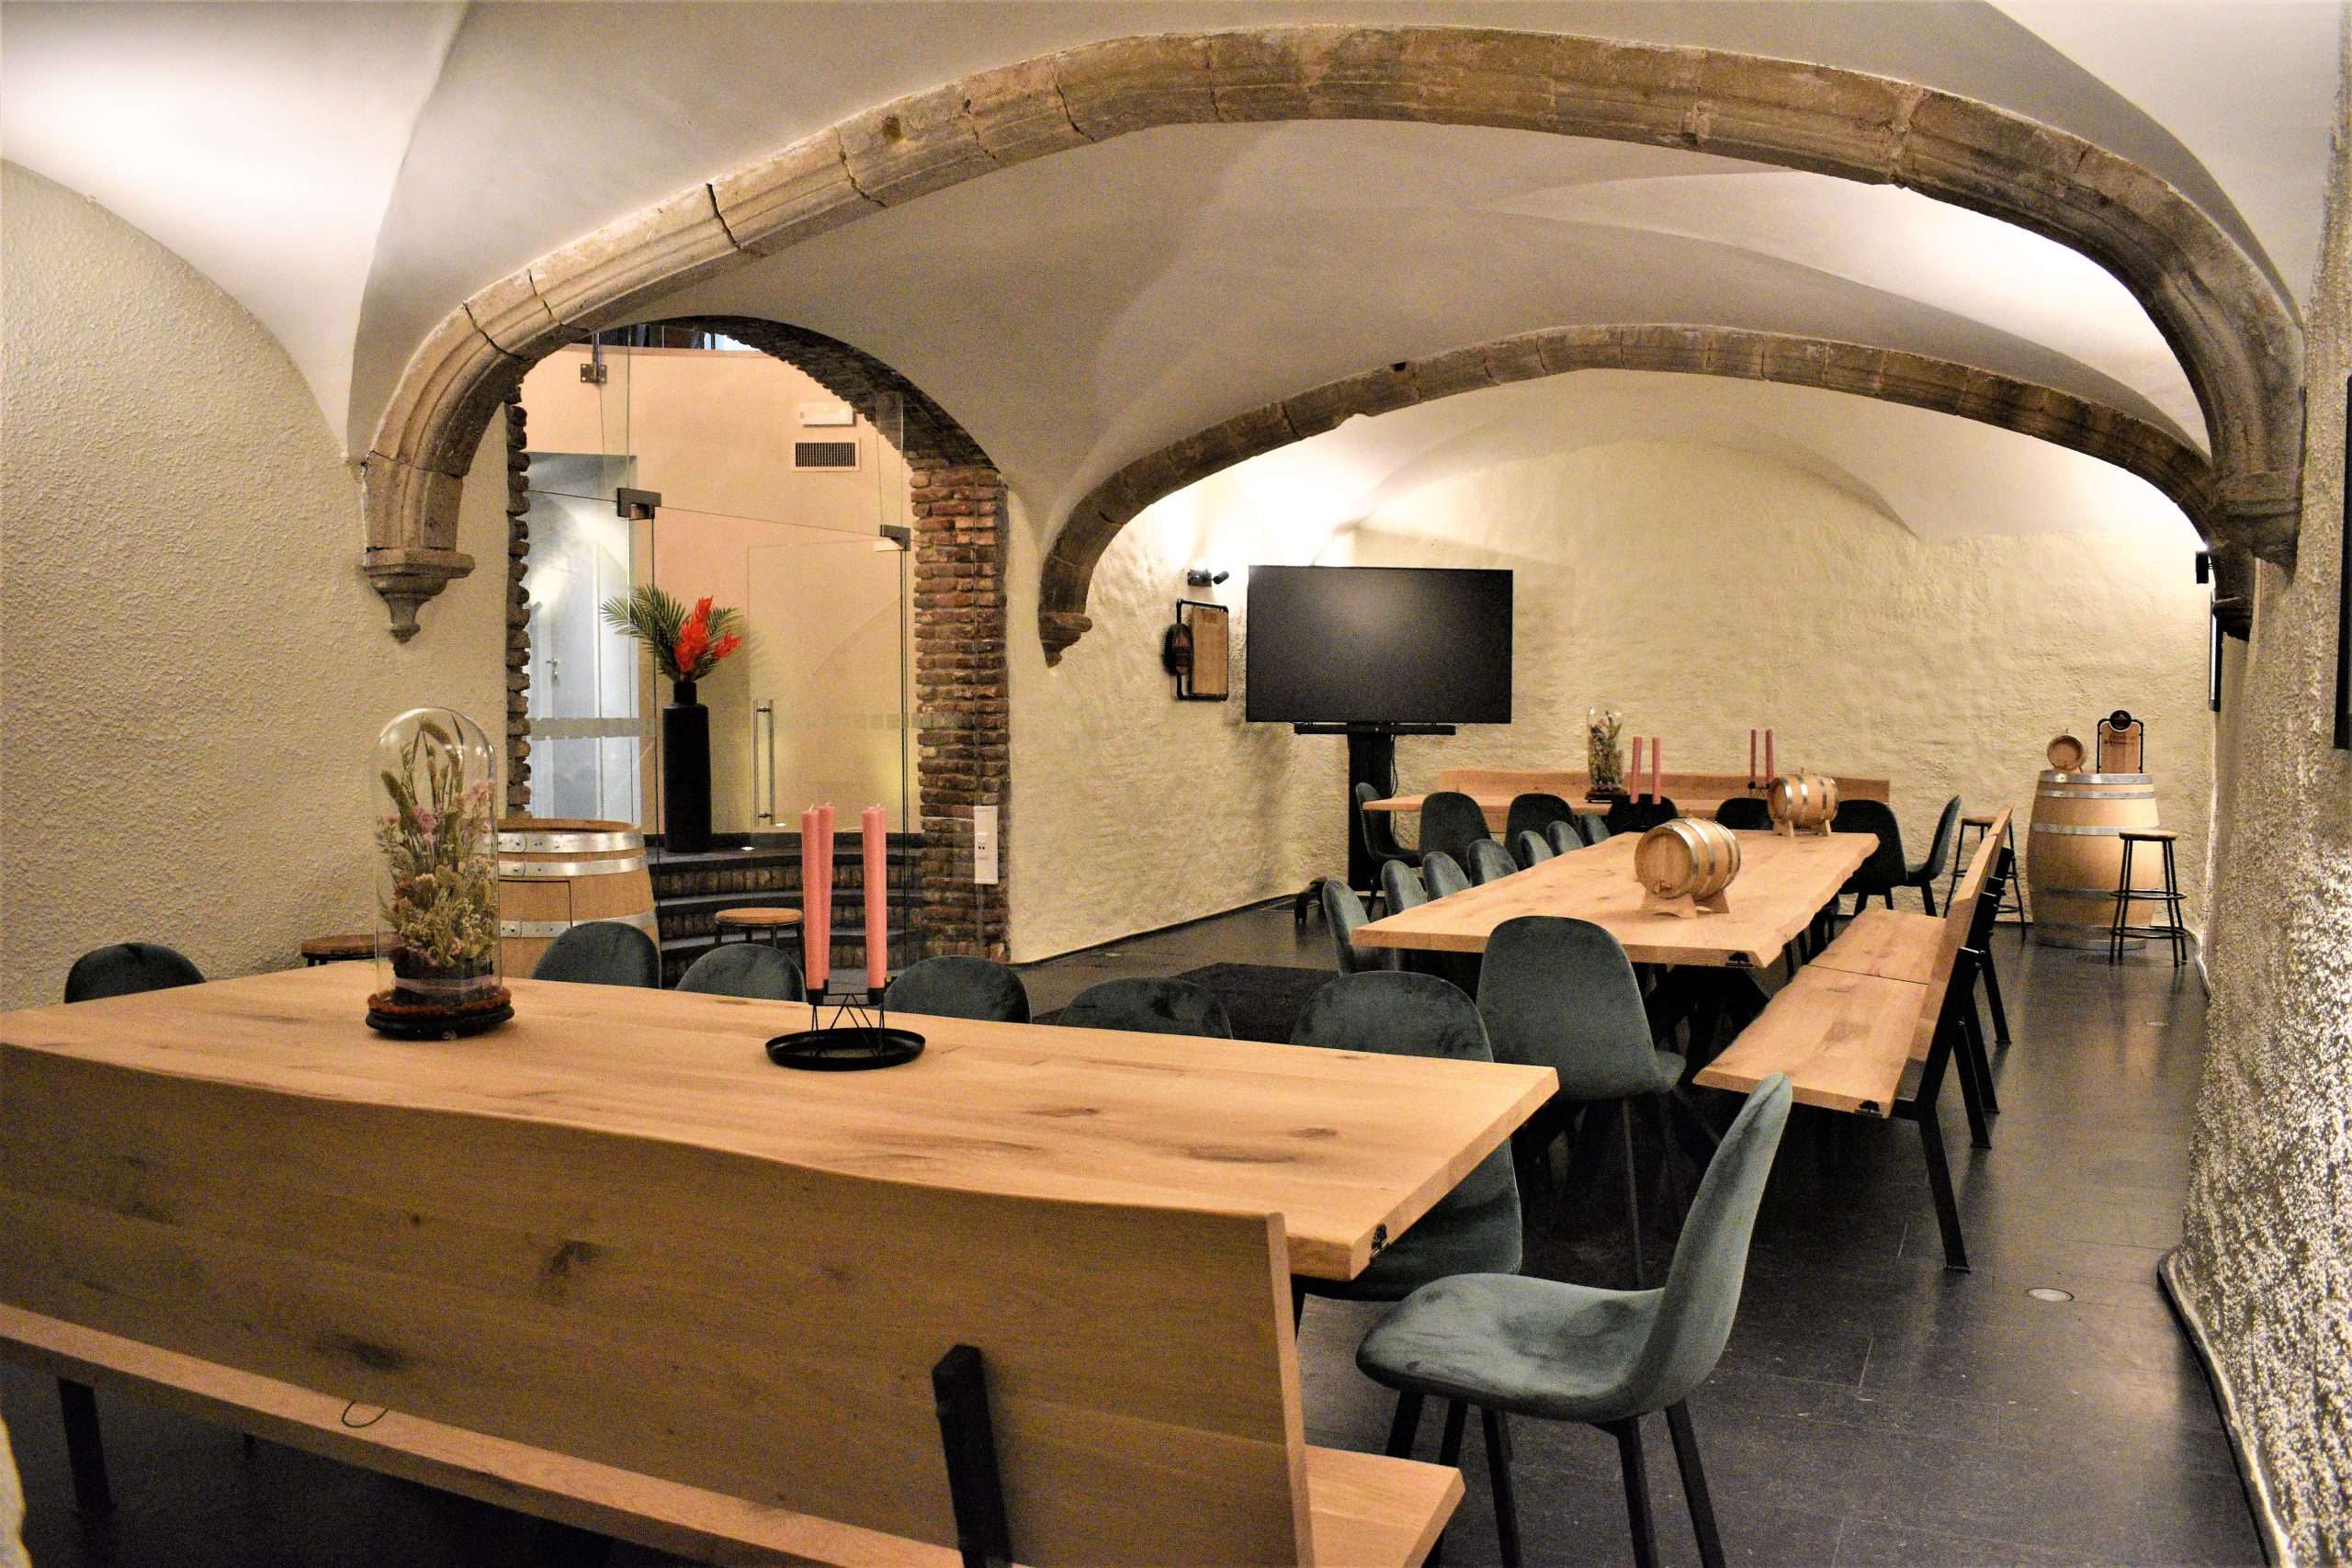 Uilenspiegel - zaal om groep te ontvangen in ons restaurant met tafels, banken en een groot scherm